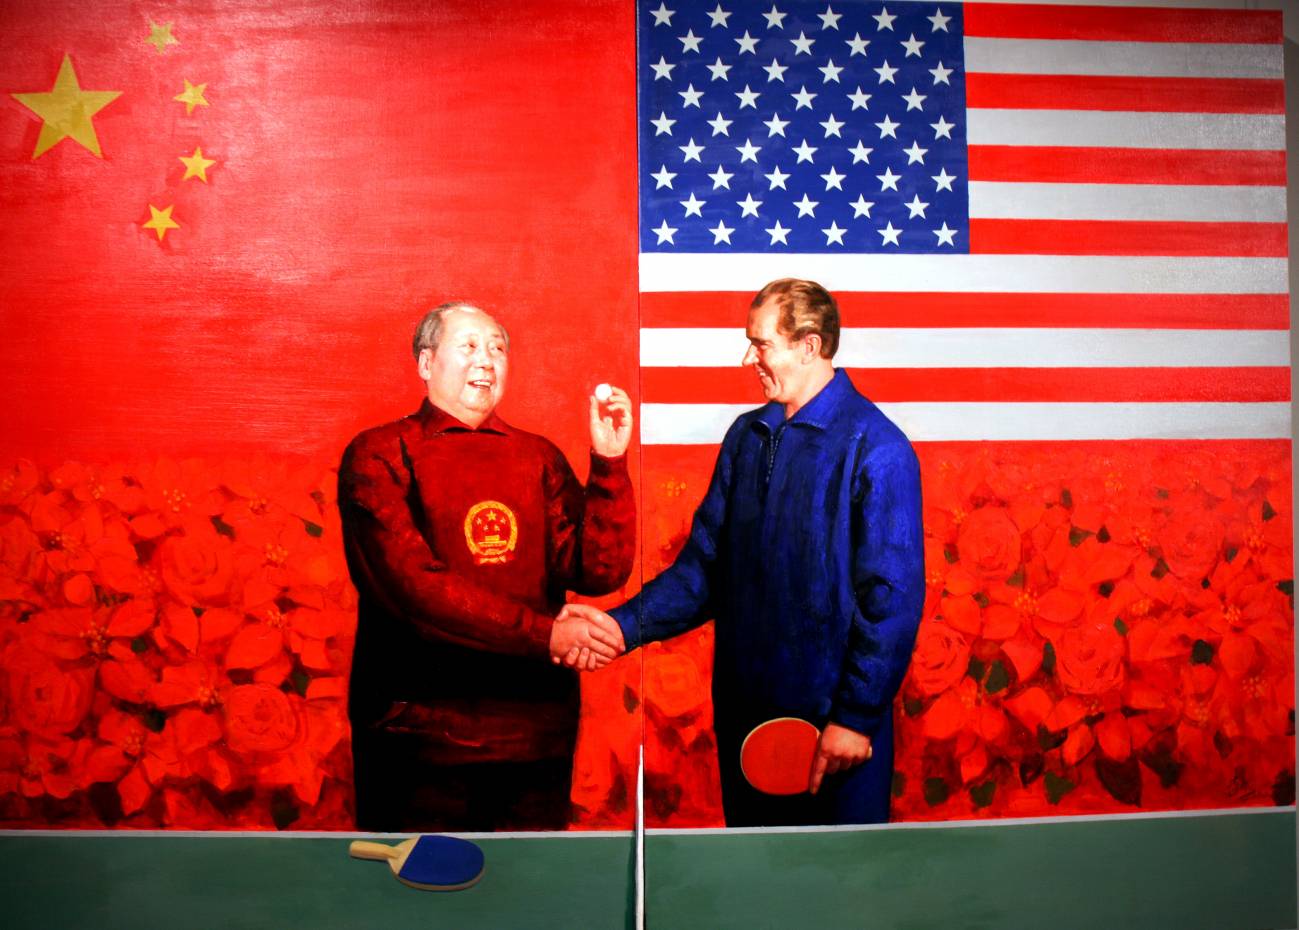 Gracias al pinpón, las relaciones entre China y EE UU iniciaron un viaje hacia el acercamiento. Imagen: 0xFCAF   